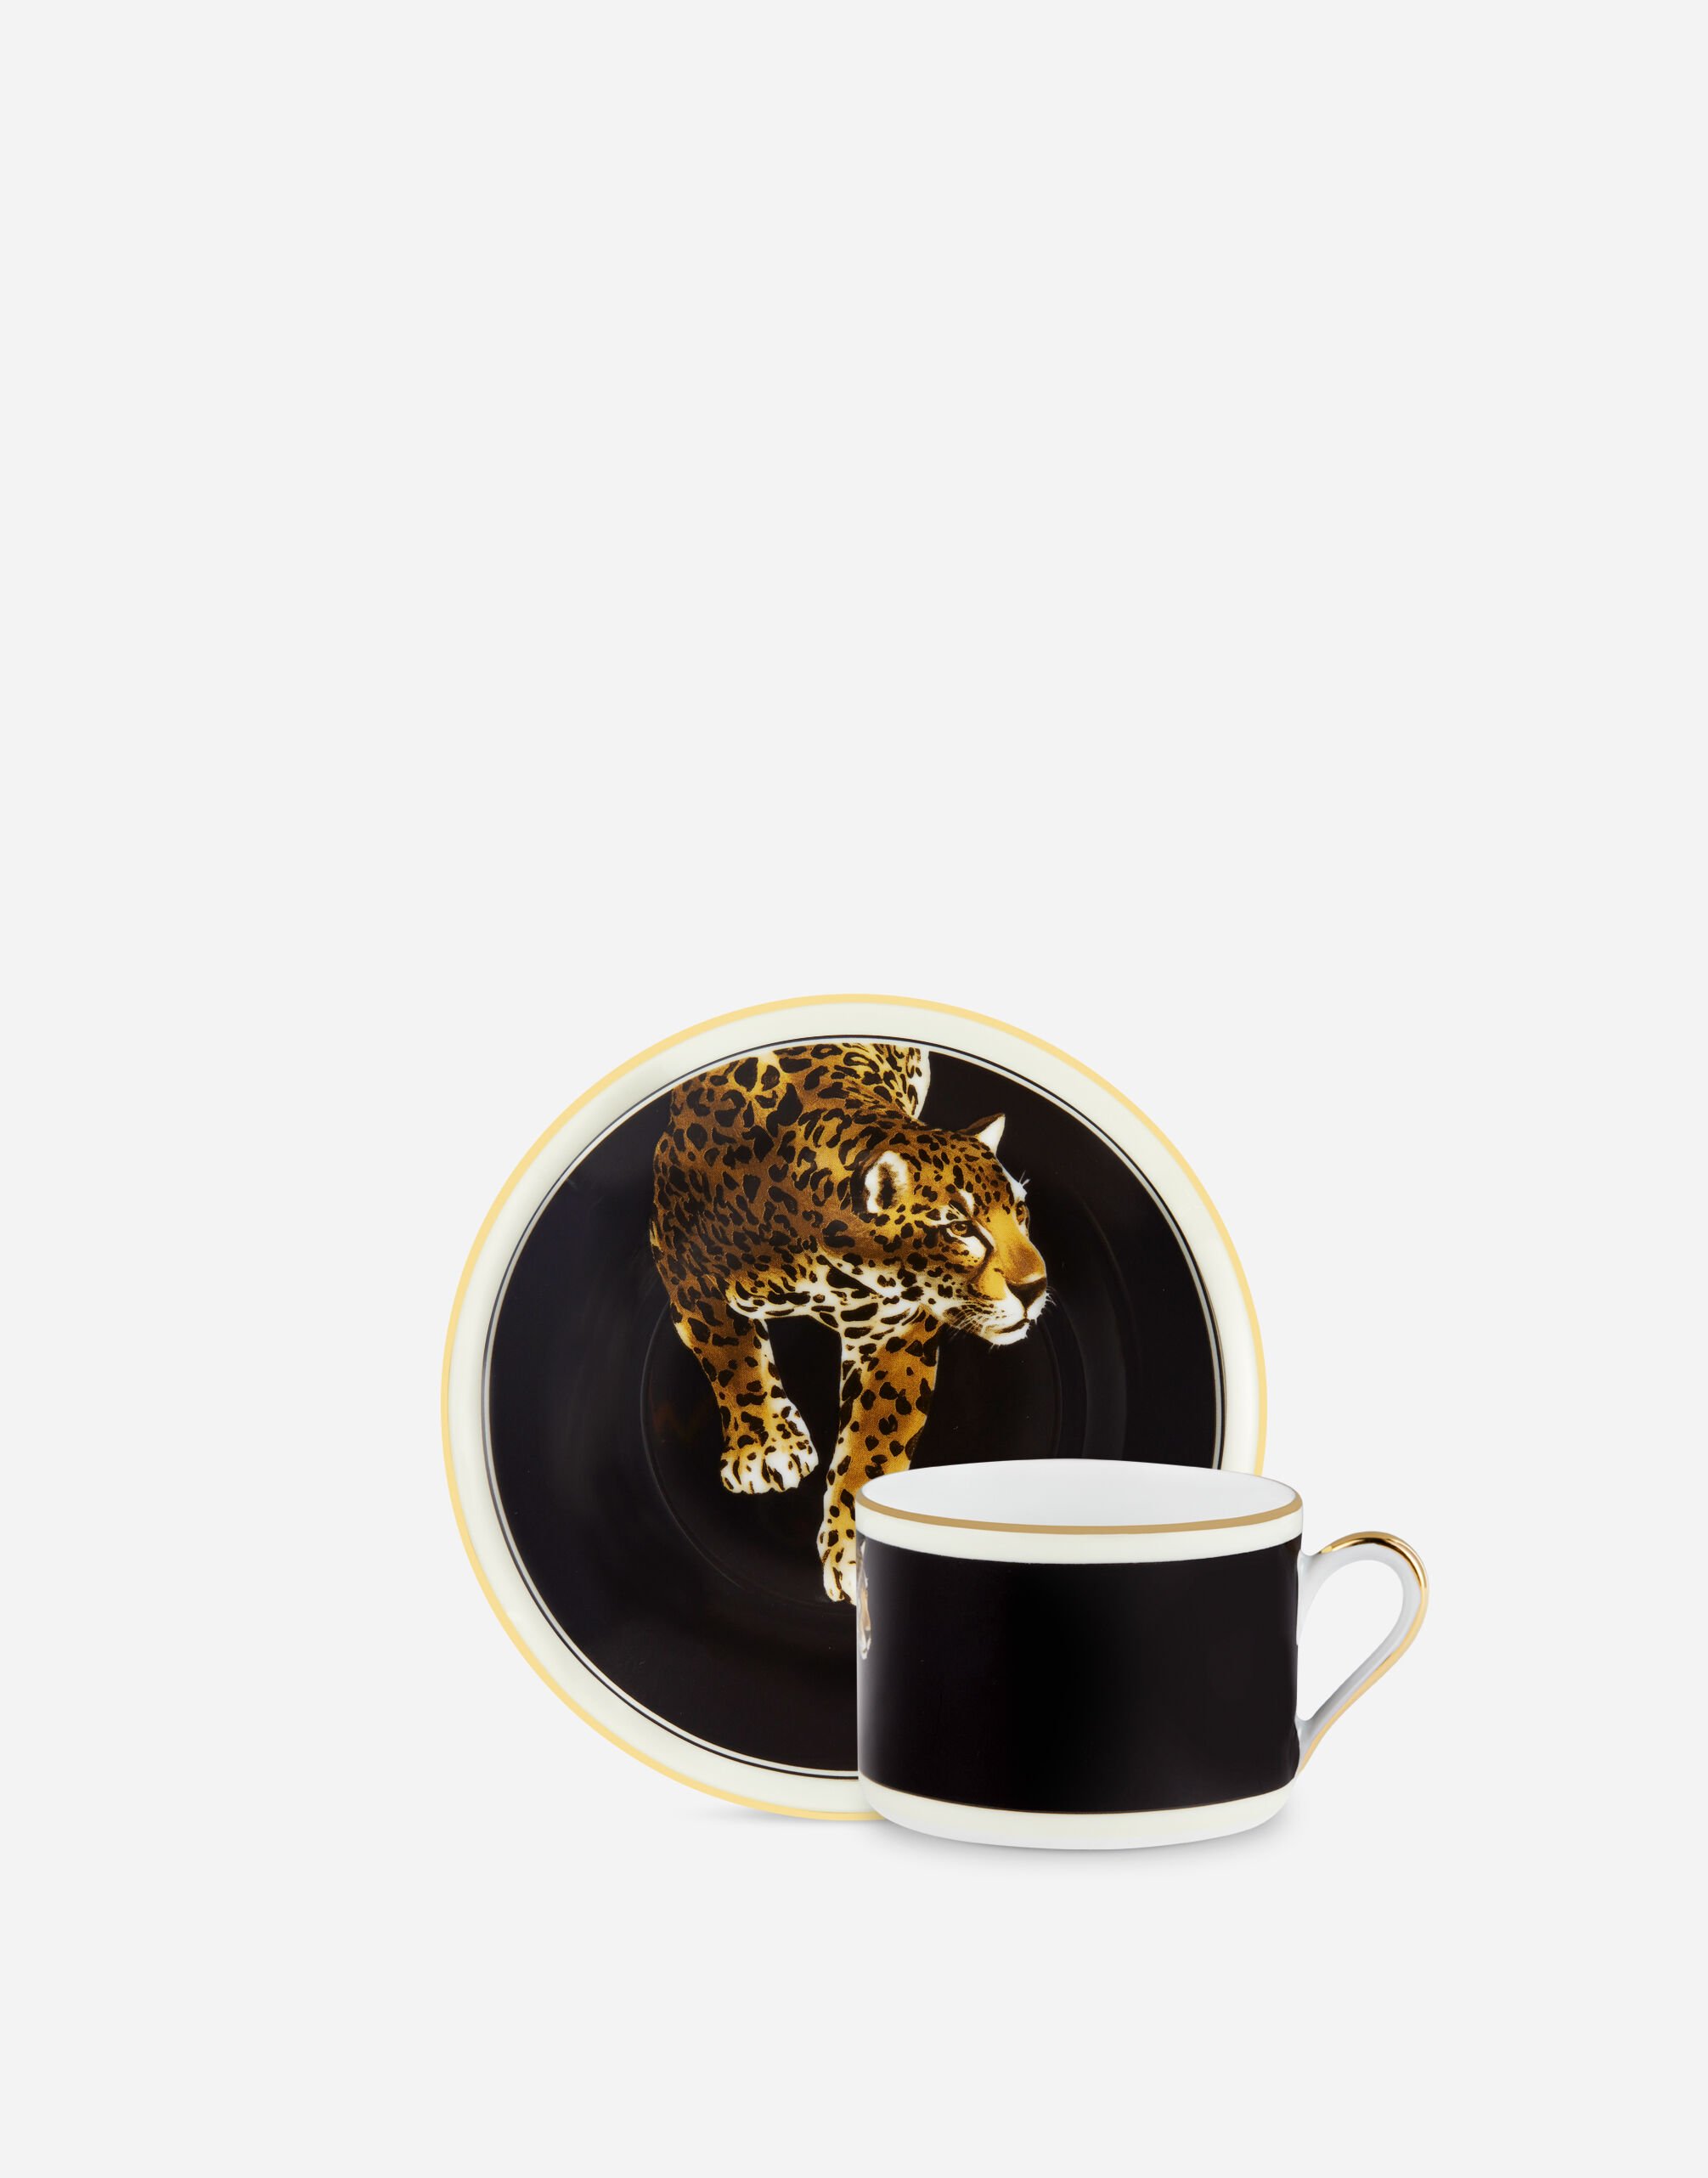 Dolce & Gabbana Porcelain Tea Set Multicolor TC0S09TCAK3